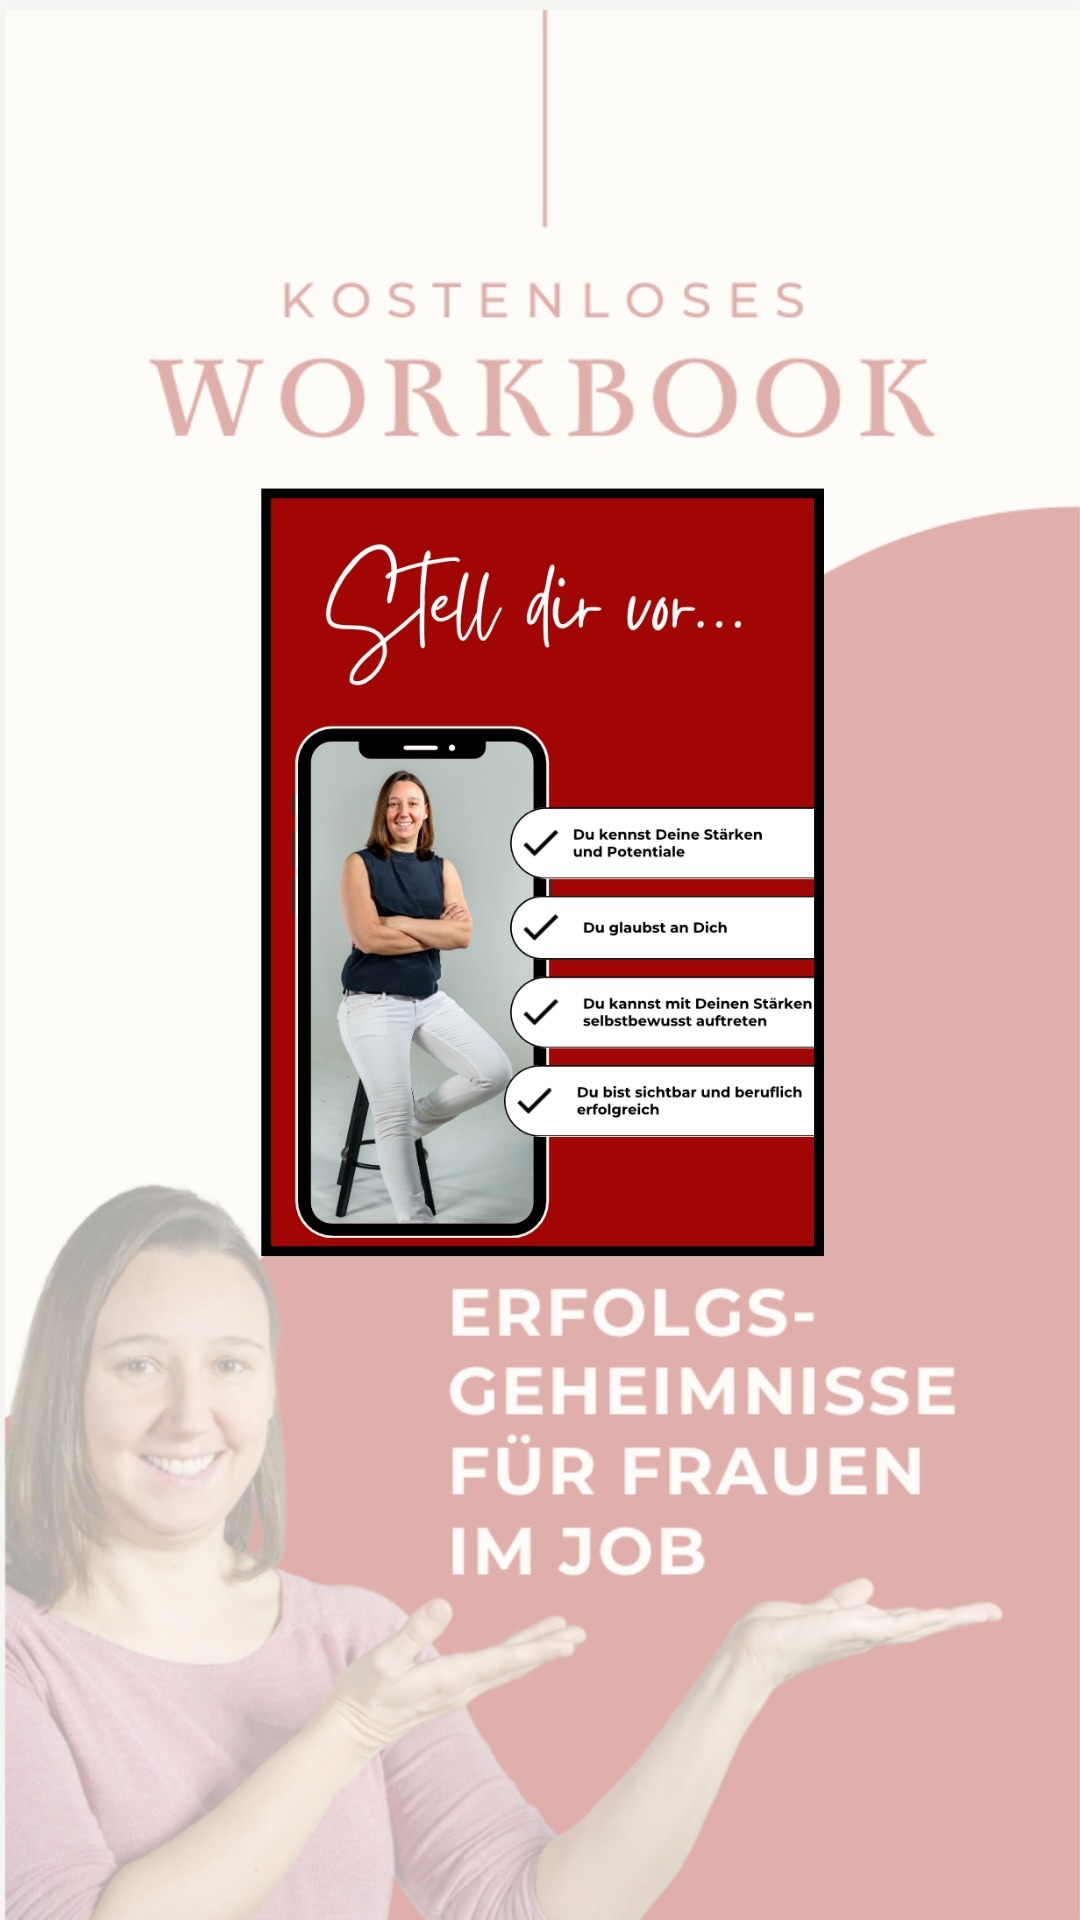 kostenloses Workbook "Erfolgsgeheimnisse für Frauen im Job" jetzt zum Download!